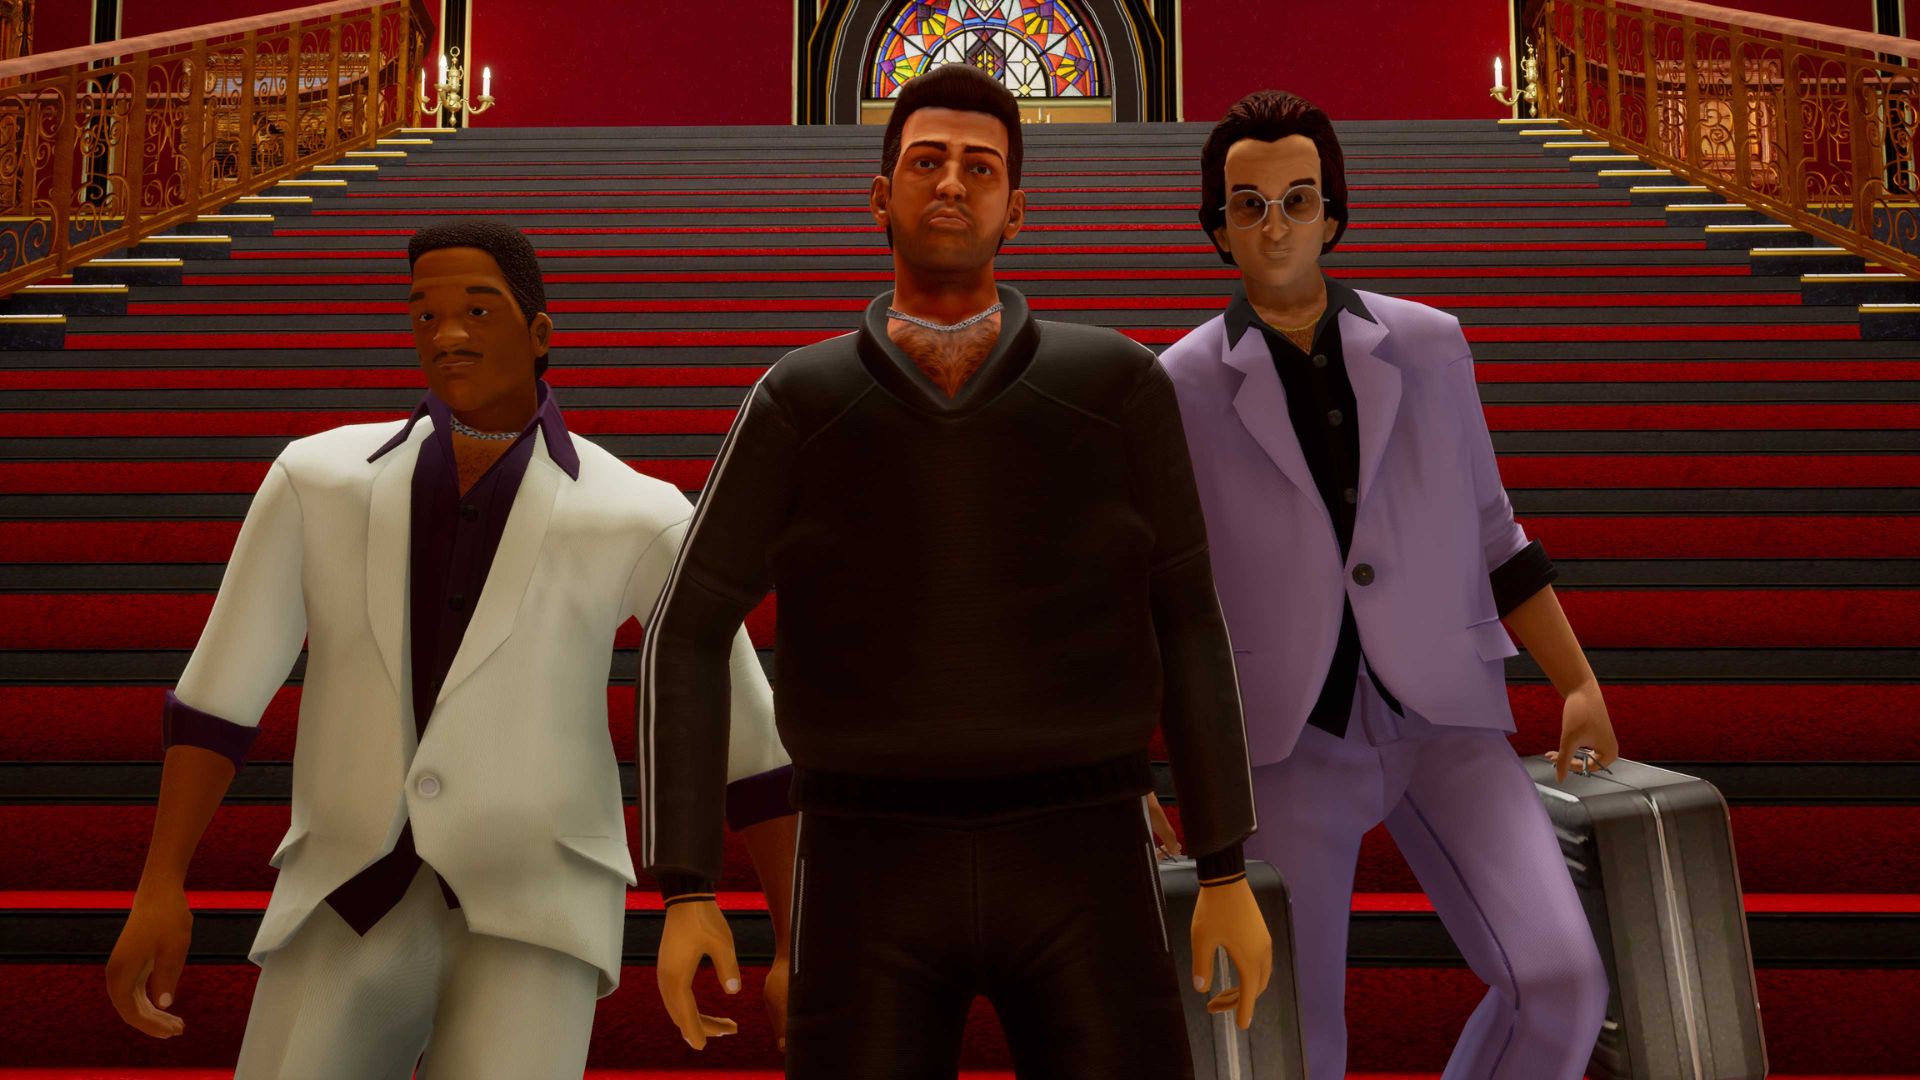 スクーター ゲーム -- GTA バイスシティのショットで、赤い階段にスーツ姿の 3 人の男性が映っています。 左側の男性は白いスーツを着ており、右側の男性は紫色のスーツを着てブリーフケースを持っており、中央の男性は黒いスーツを着ています。